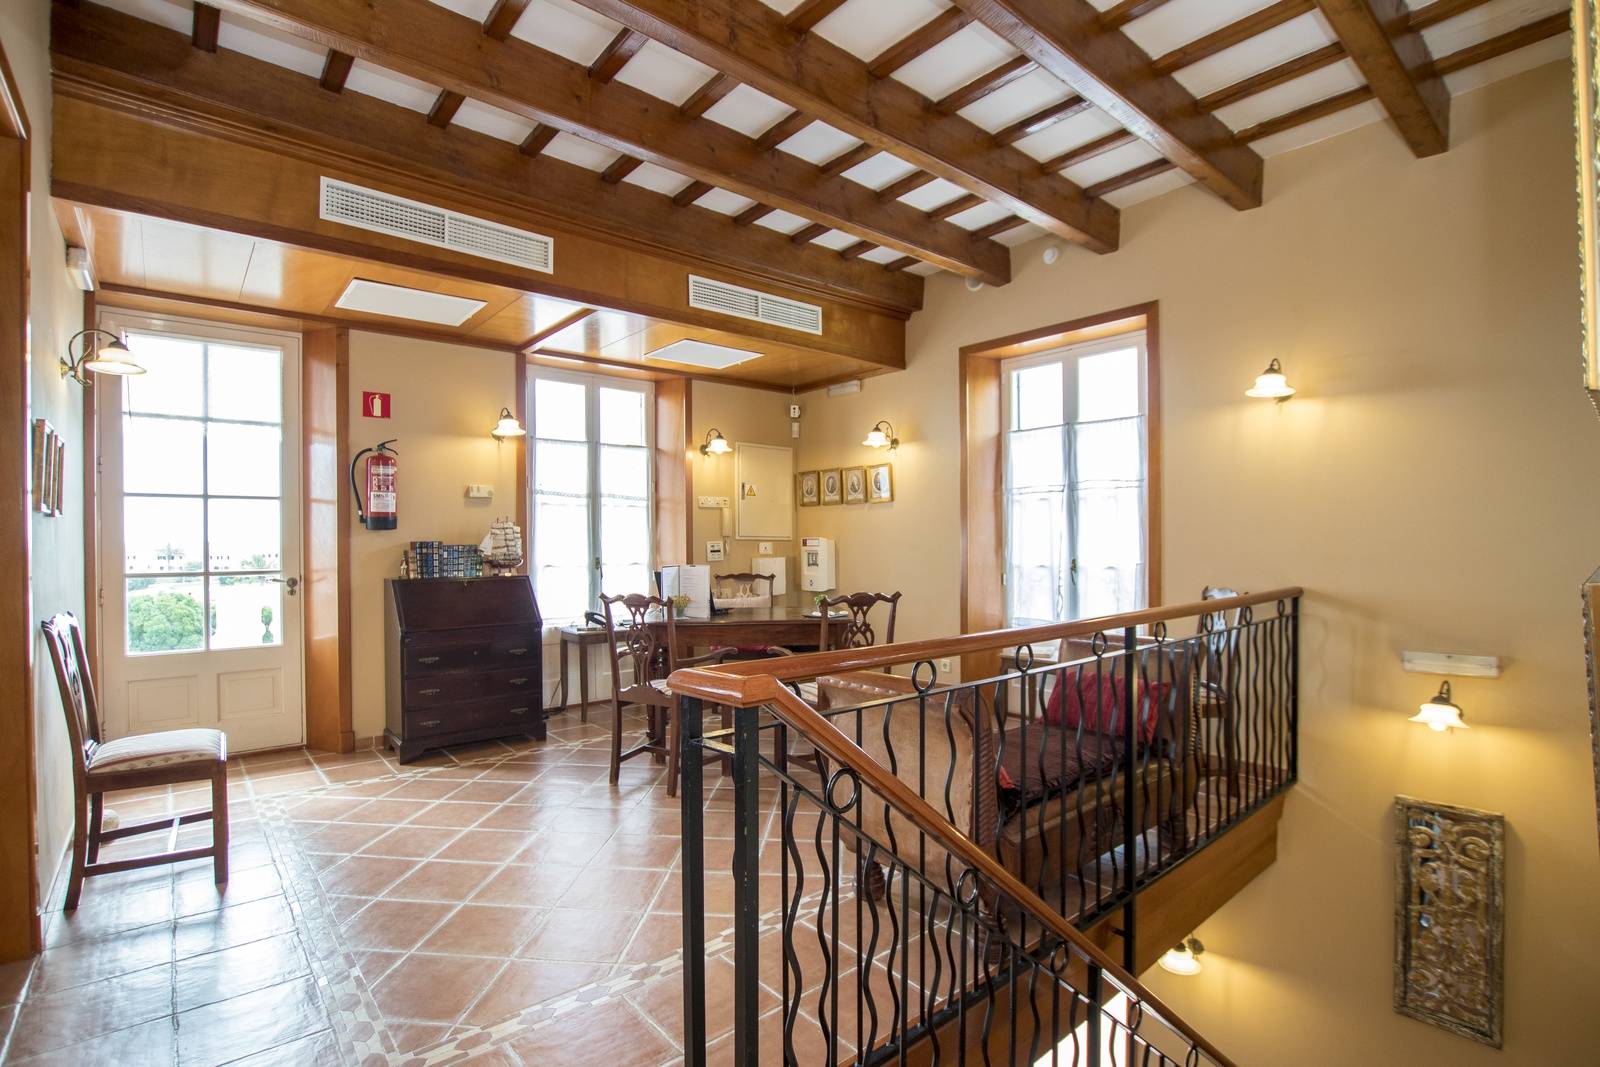 Hotel en venta en una antigua finca en Es Castell en Menorca